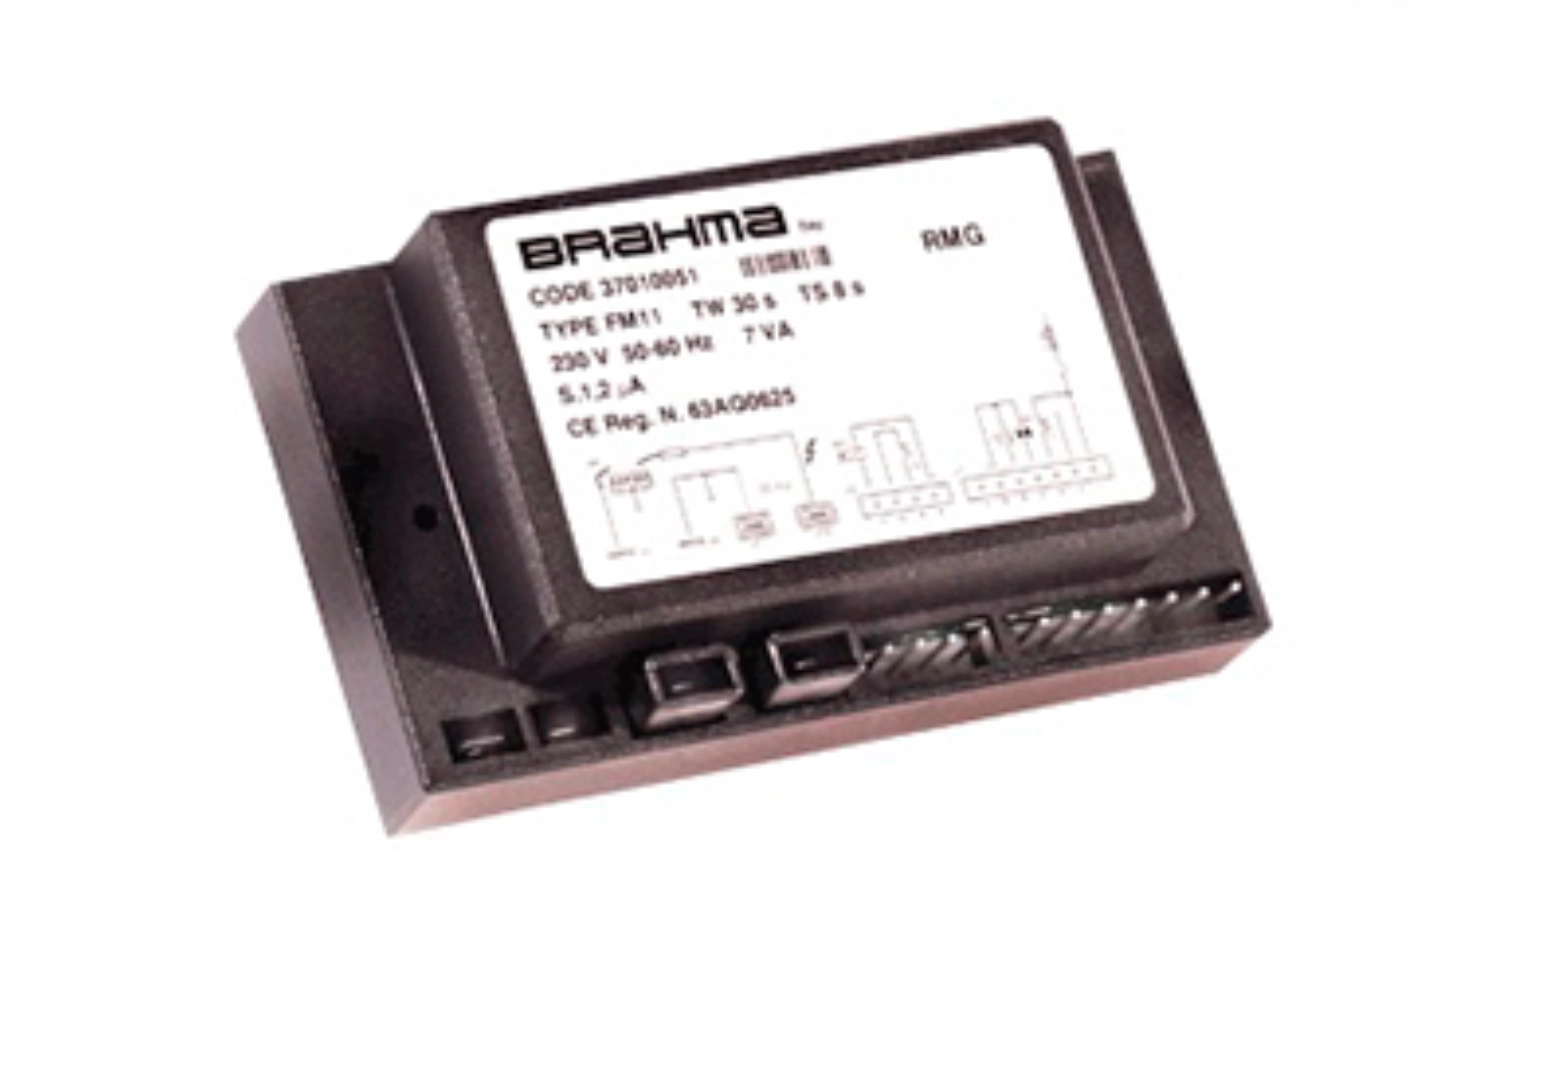 Centralita Brahma Miniflat FM11 Tw1,5 Ts10